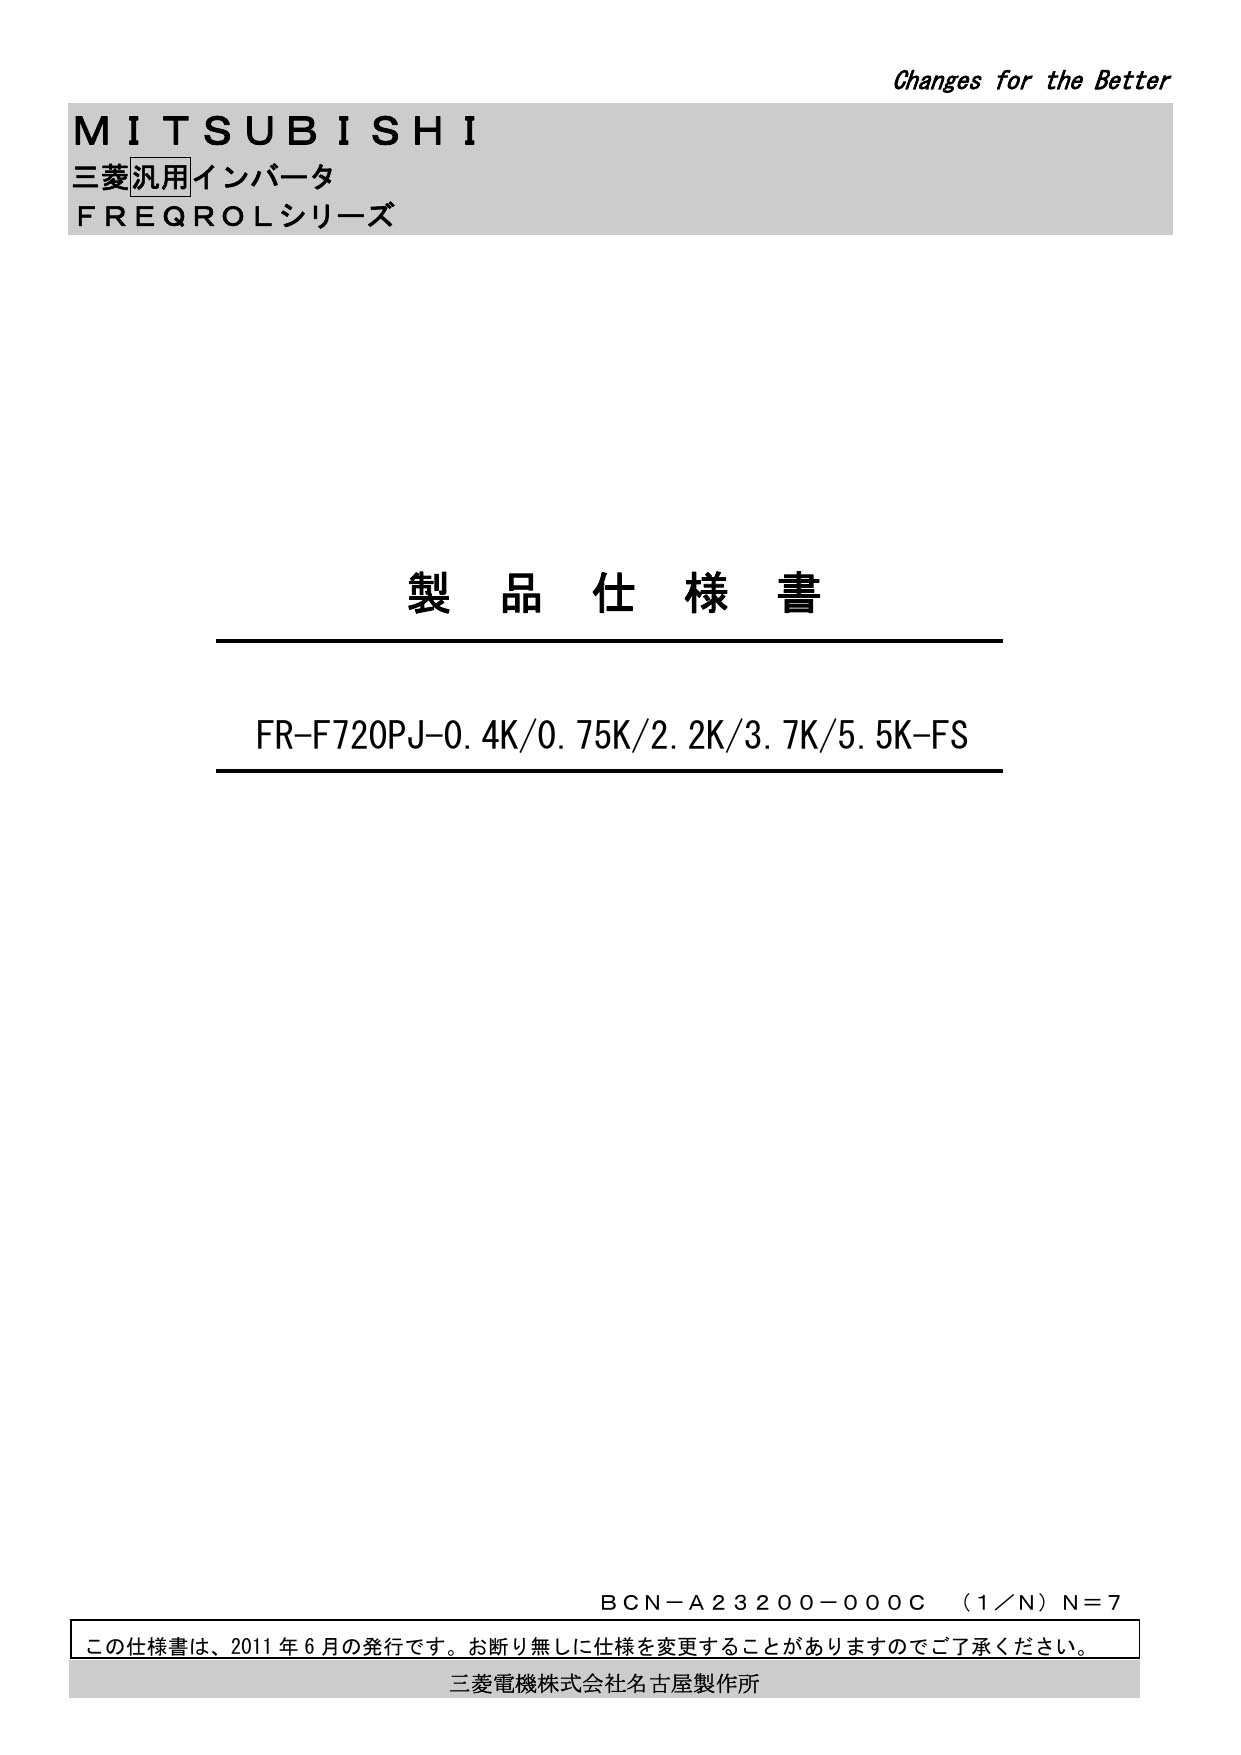 三菱電機 インバータ FR-F720PJ-3.7K FR-HEL-3.7K